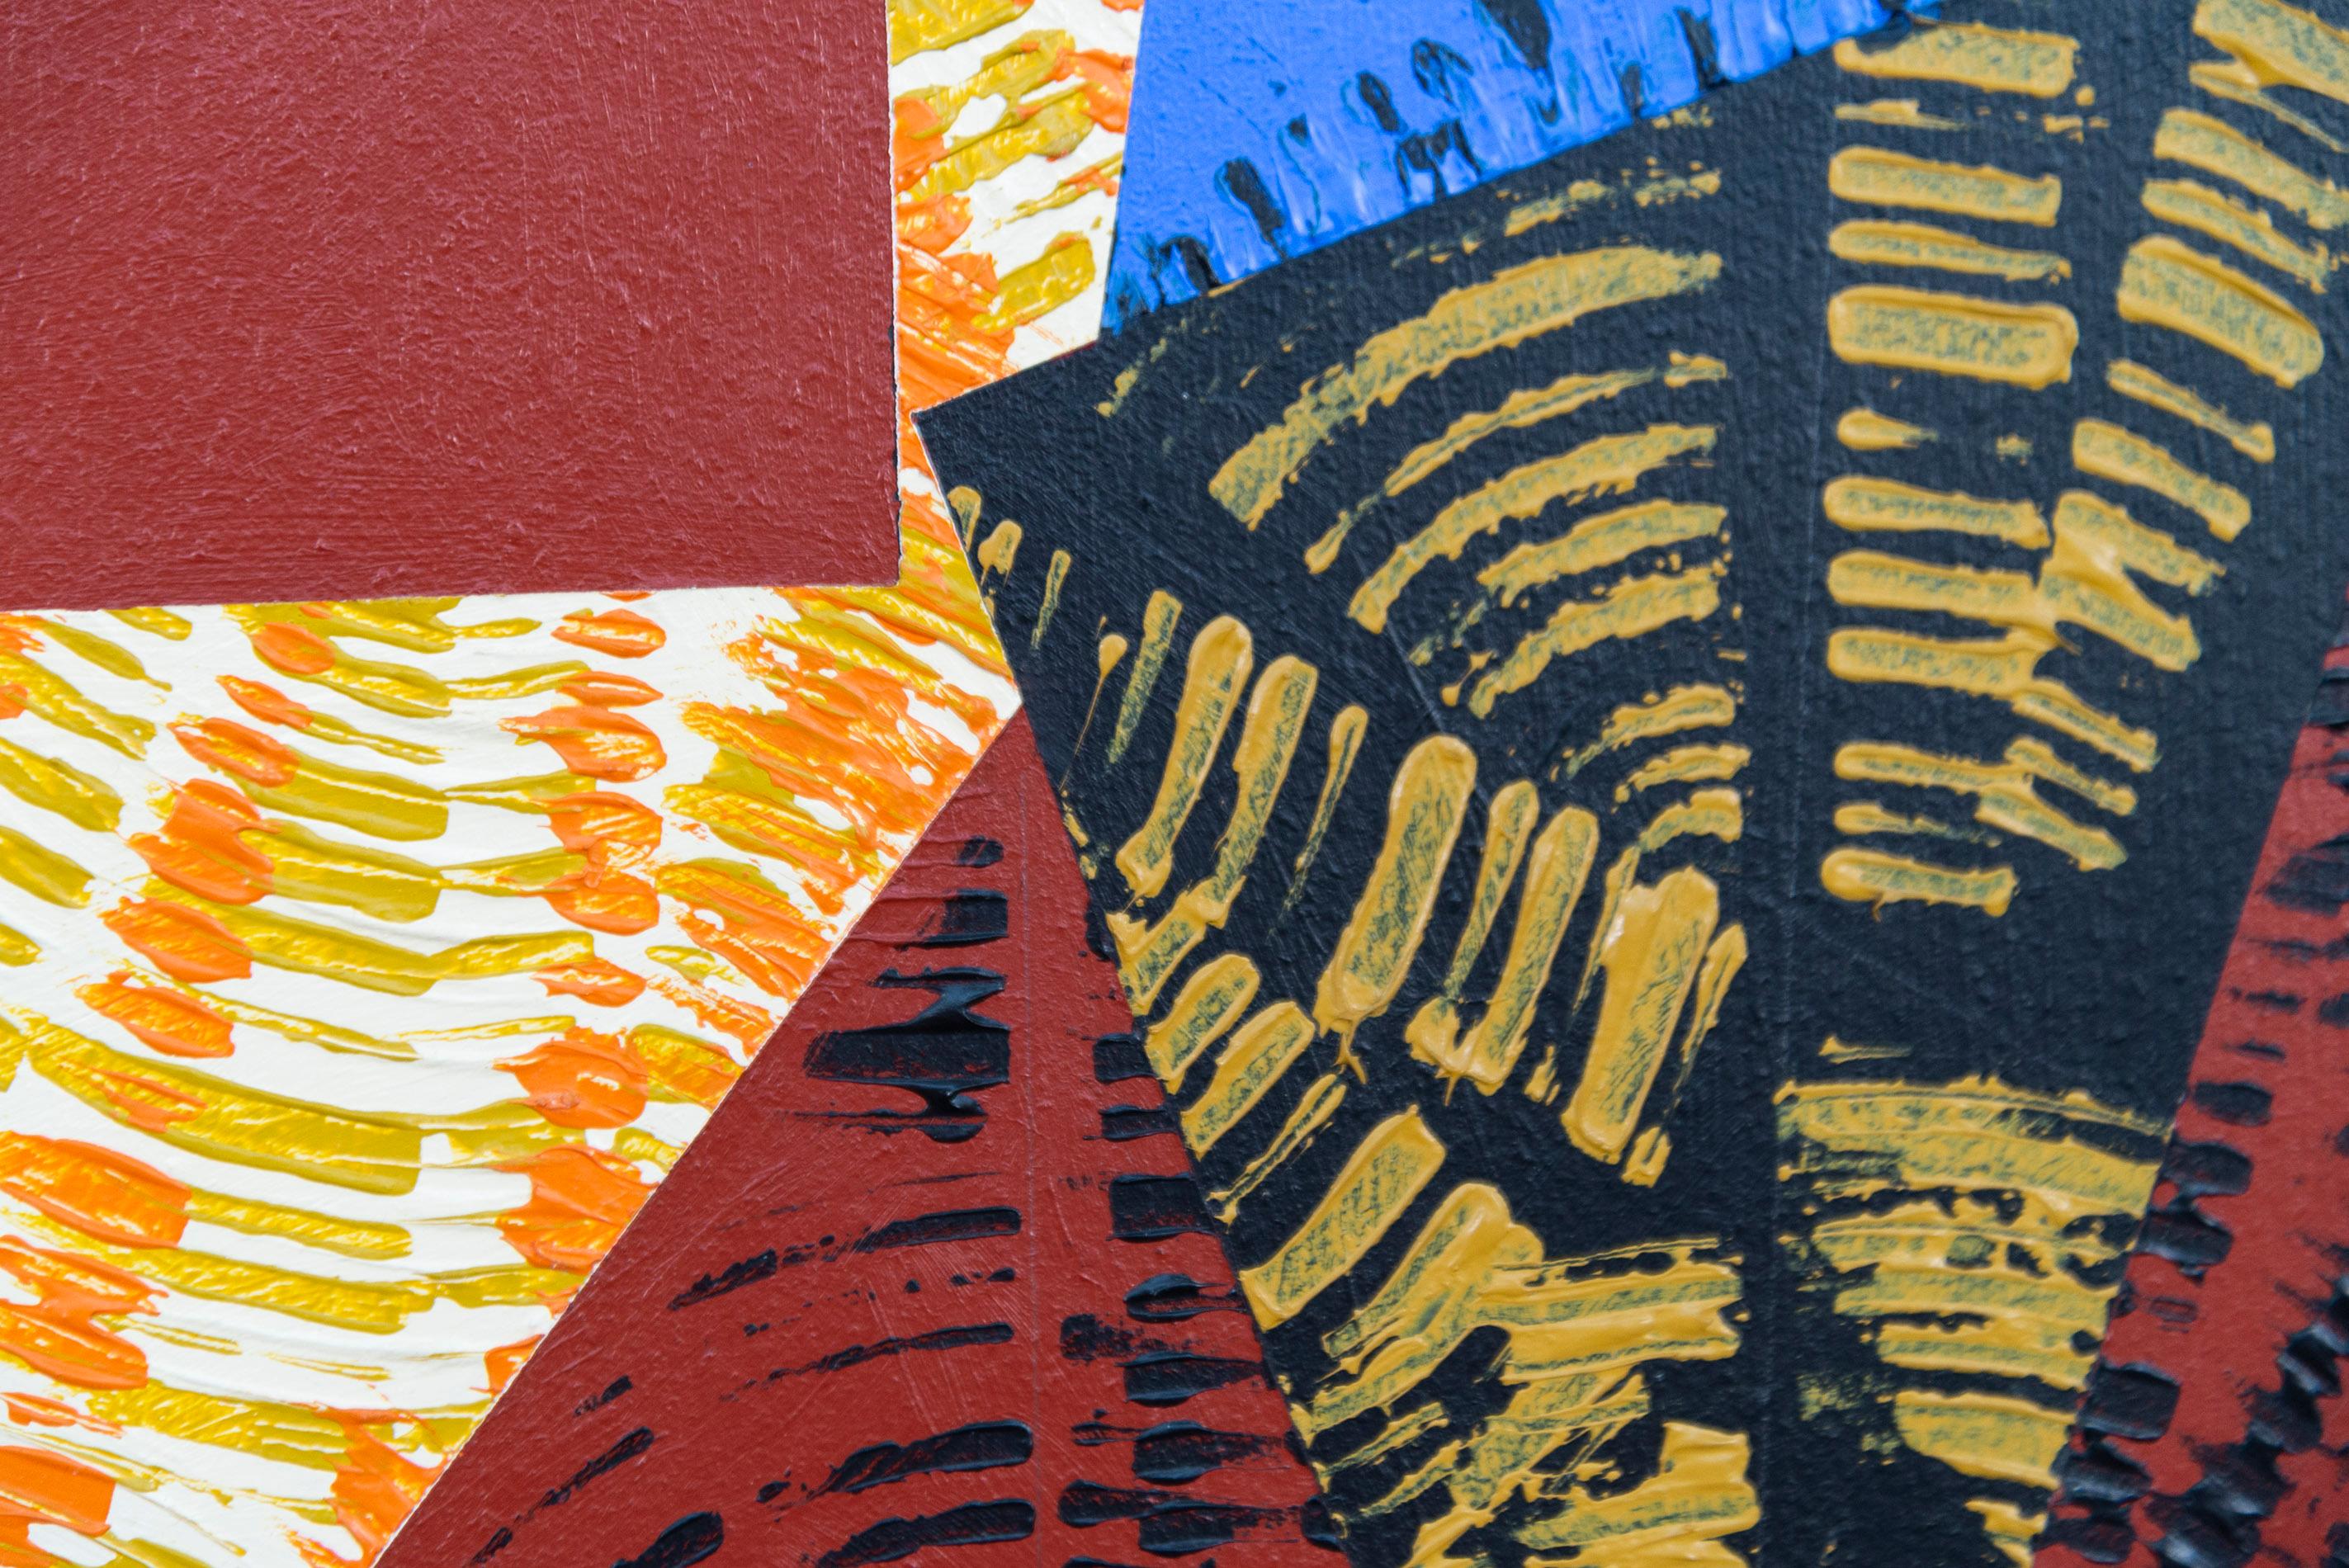 Seit Jahrzehnten produziert Yvonne Lammerich stimmungsvolle zeitgenössische Kunstwerke, die international ausgestellt werden. Diese Serie farbenfroher grafischer Acrylbilder zeigt ihren meisterhaften Sinn für Farben und Formen. Geometrische Formen